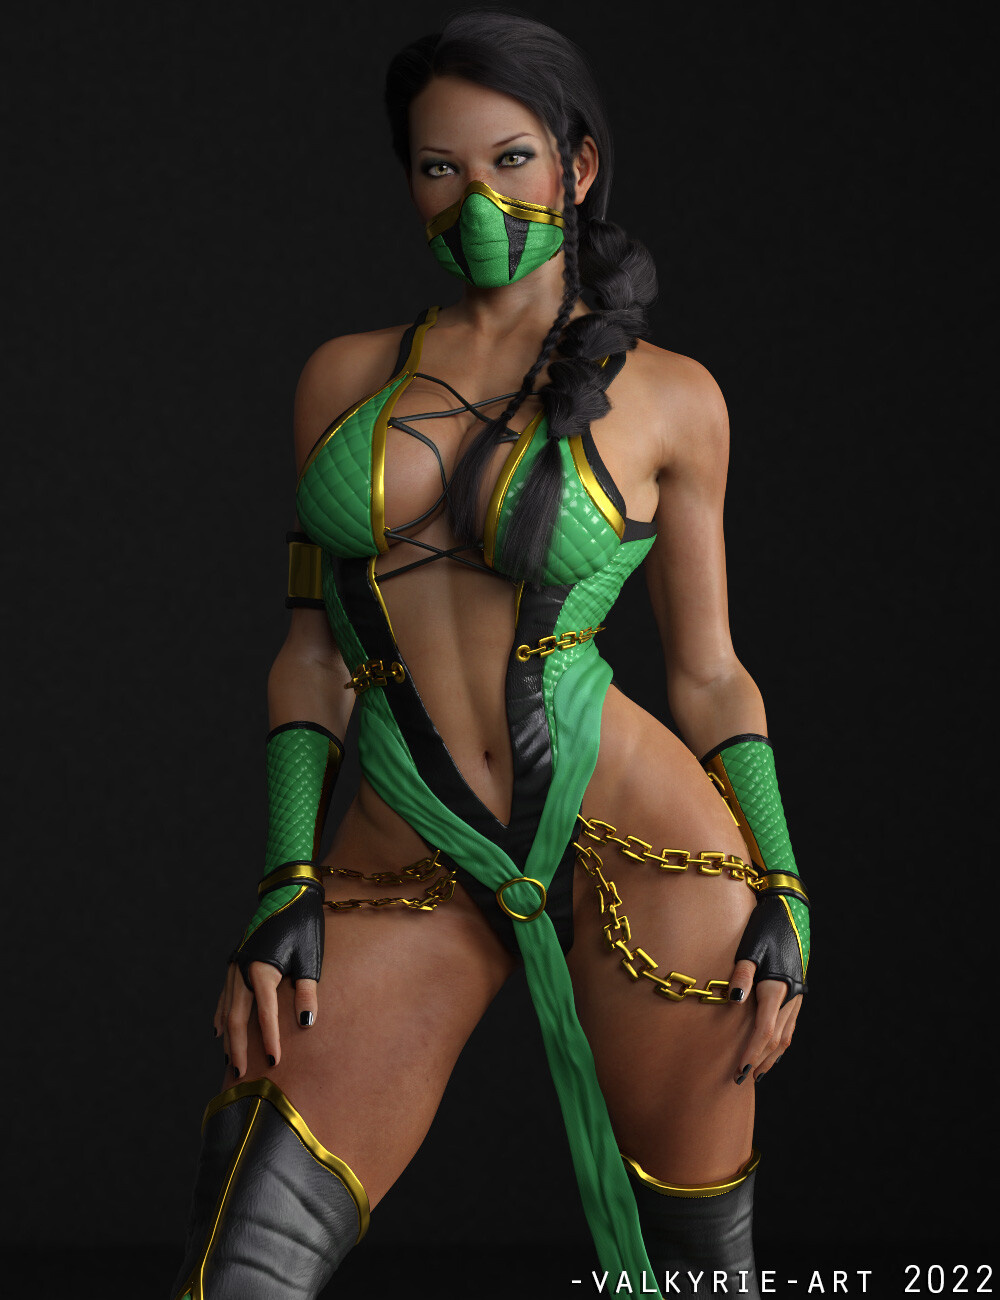 Дизайнер переосмыслил сексуальность женских персонажей из Mortal Kombat